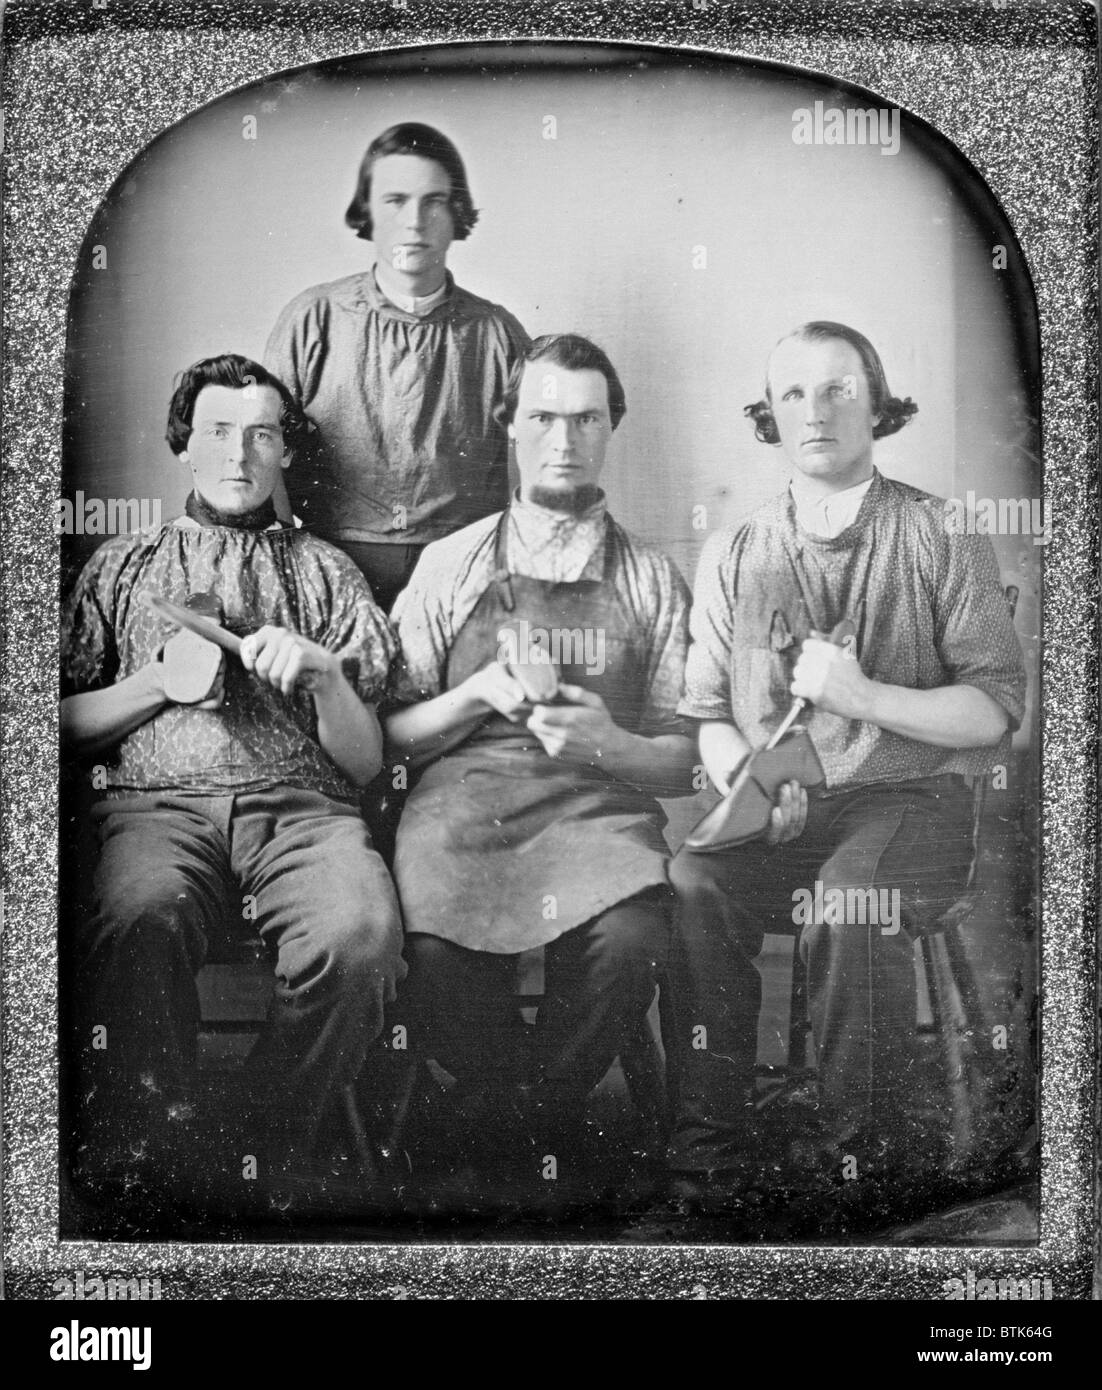 Gruppo professionale ritratto di quattro calzolai, azienda di calzature e la calzatura. Apparecchiatura Piastra sesto daguerreotype 1840-1860 ca Foto Stock